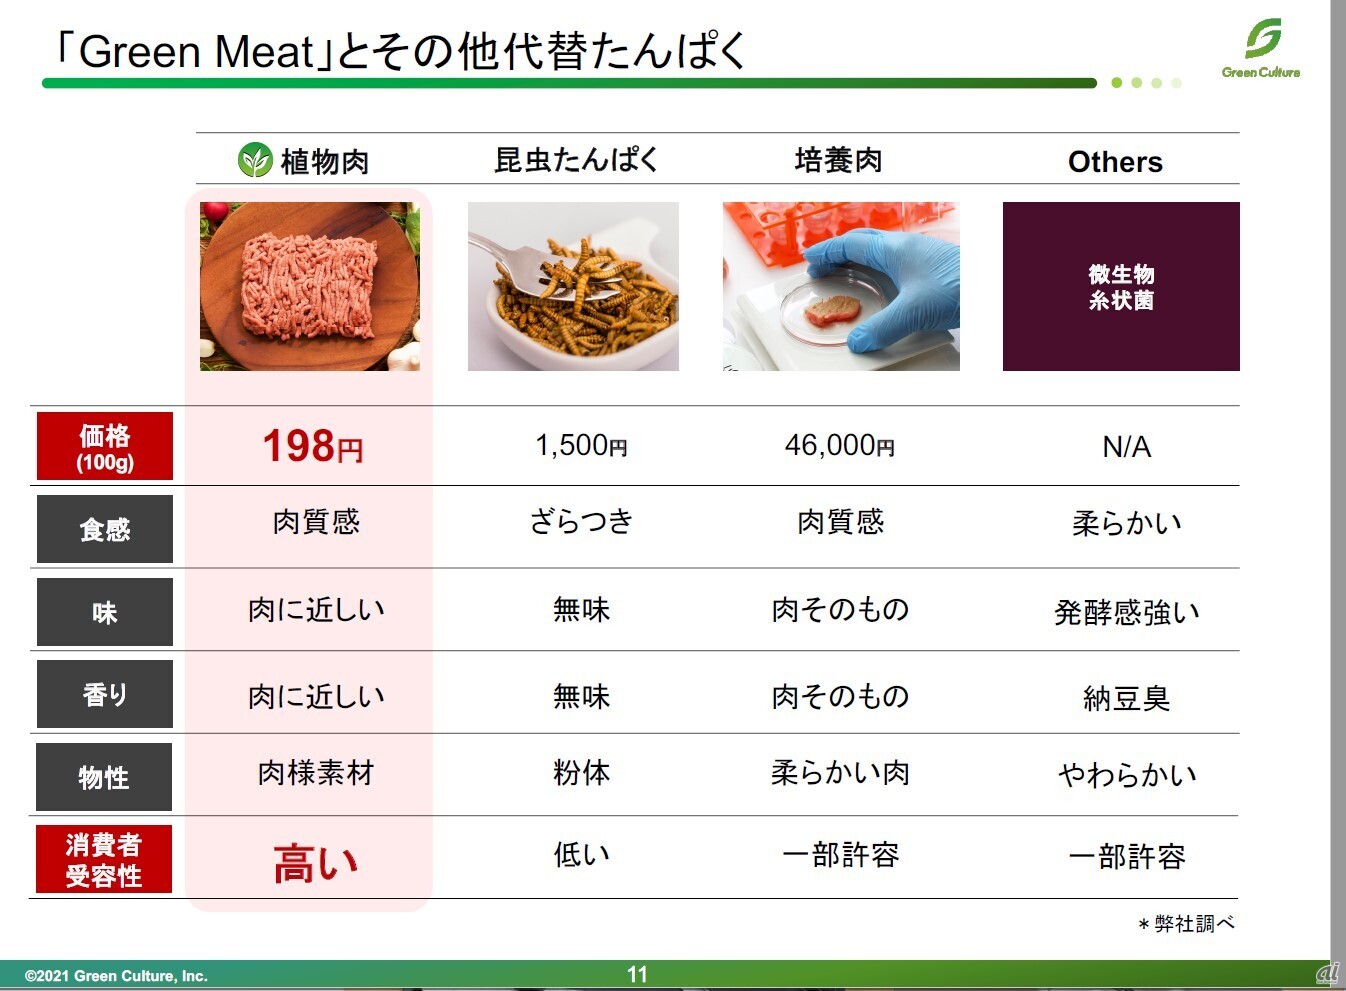 Greenかつの原料となっている植物肉と代替たんぱくの比較